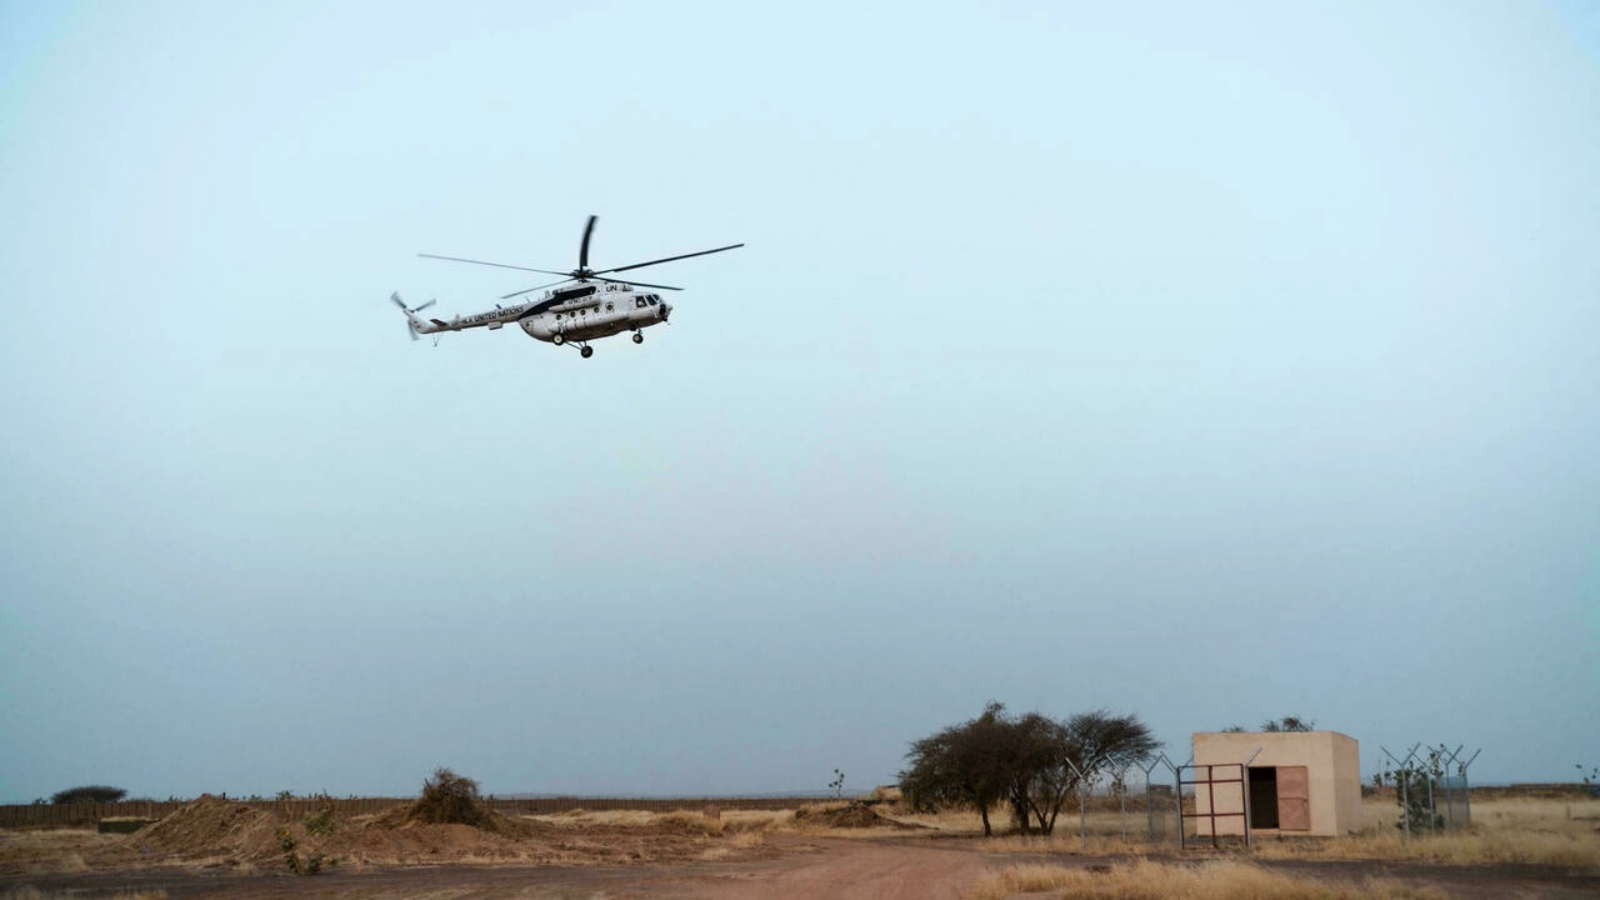 طائرة هيلكوبتر تابعة للبعثة الأممية خلال نزولها في مهبط بمينكا شمال مالي أكتوبر الماضي 